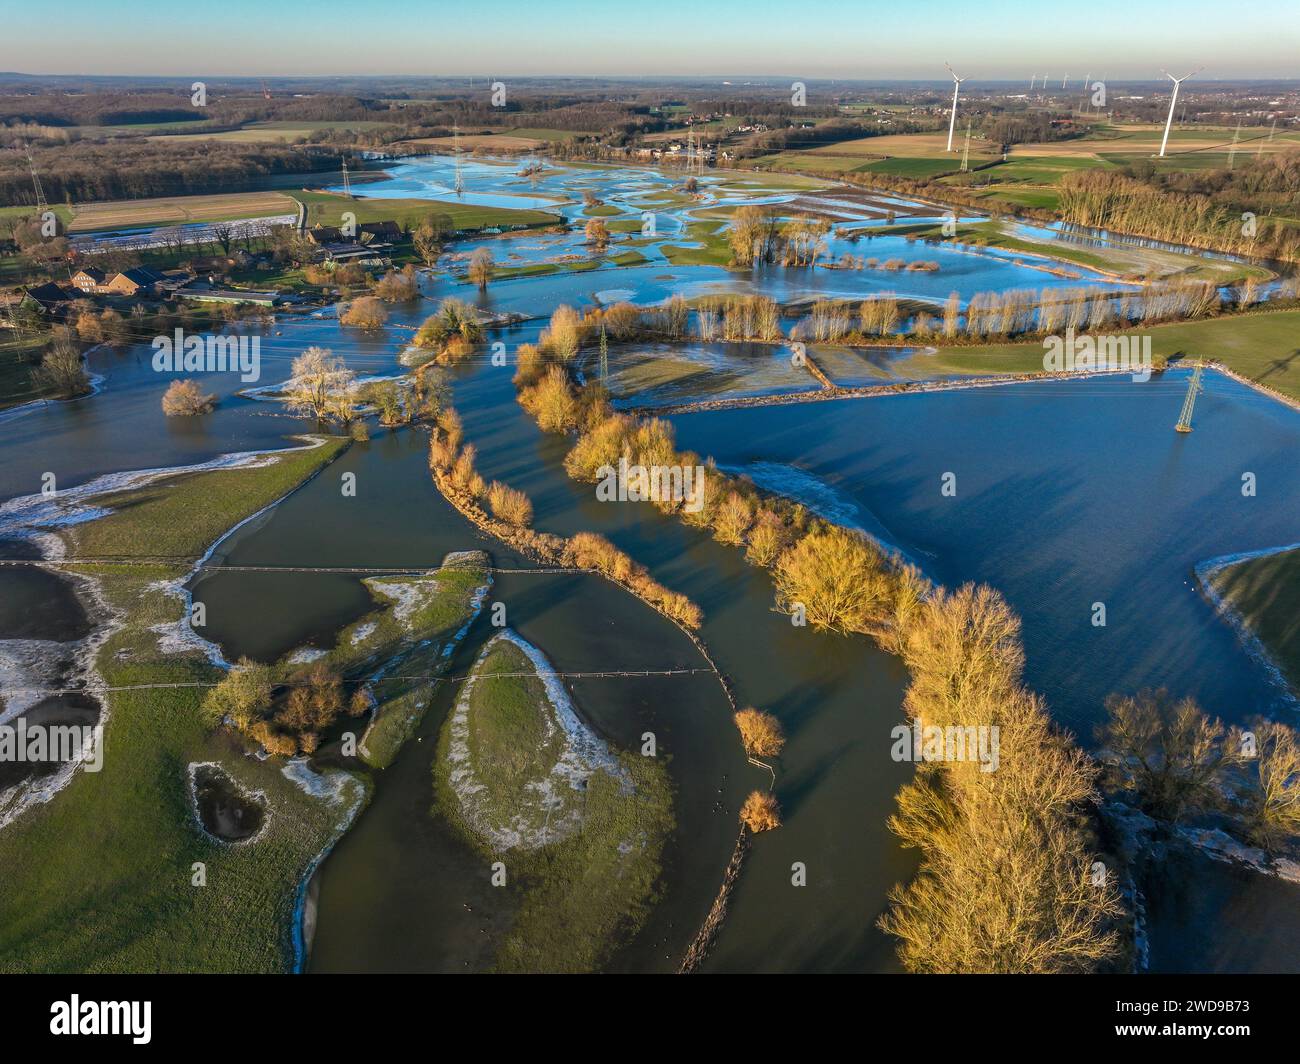 Selm, Nordrhein-Westfalen, Deutschland - Hochwasser an der Lippe, Fluss im Ruhrgebiet, die Felder, die landwirtschaftlichen Flächen der Bauern neben dem Wasser Stockfoto